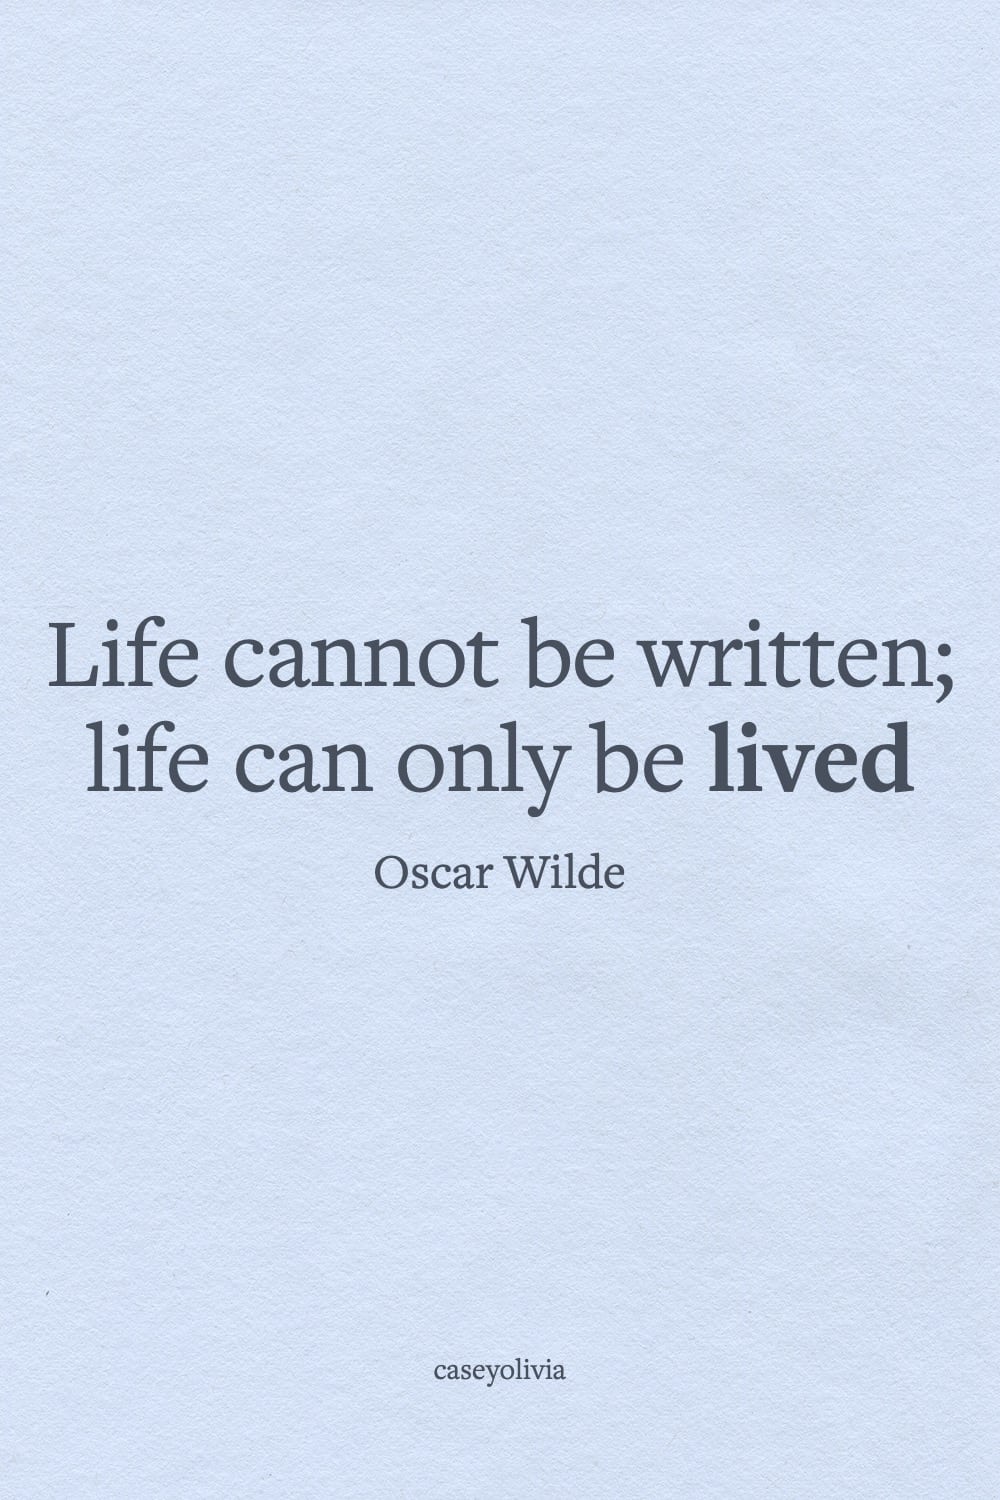 life cannot be written oscar wilde